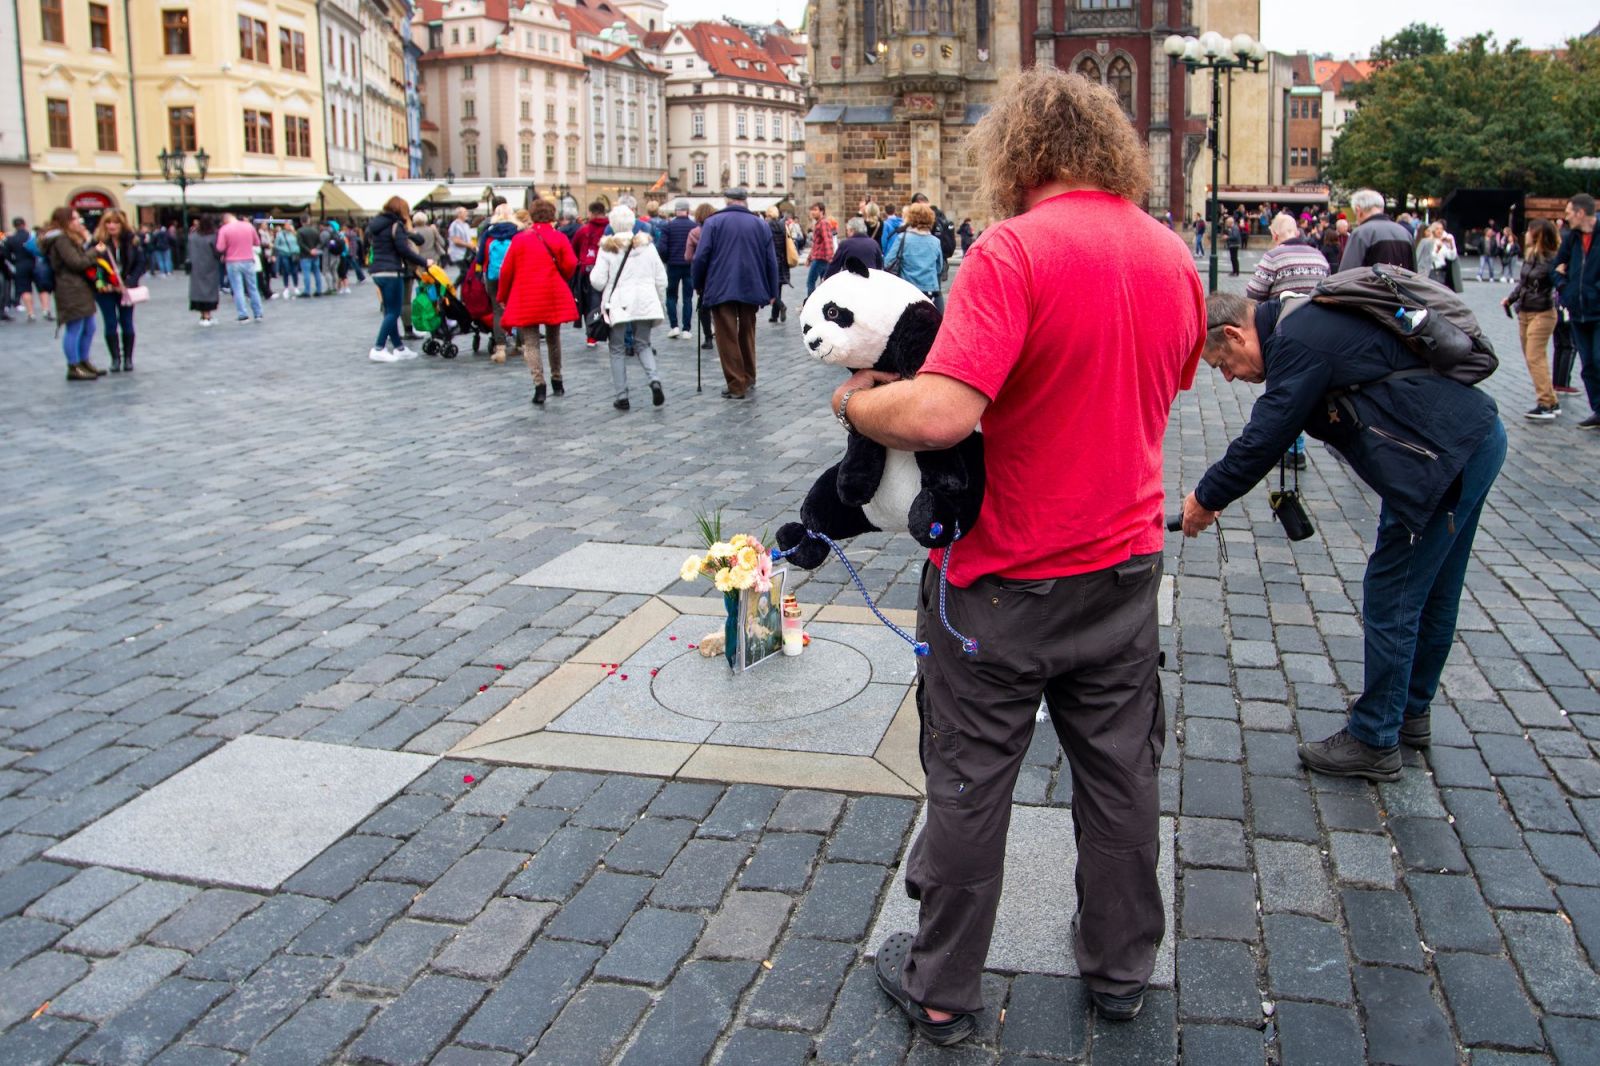 V Praze dostal pokutu Mickey Mouse, šaška i smrtku vyřešili strážníci domluvou. Navštívili jsme centrum po zákazu buskingu